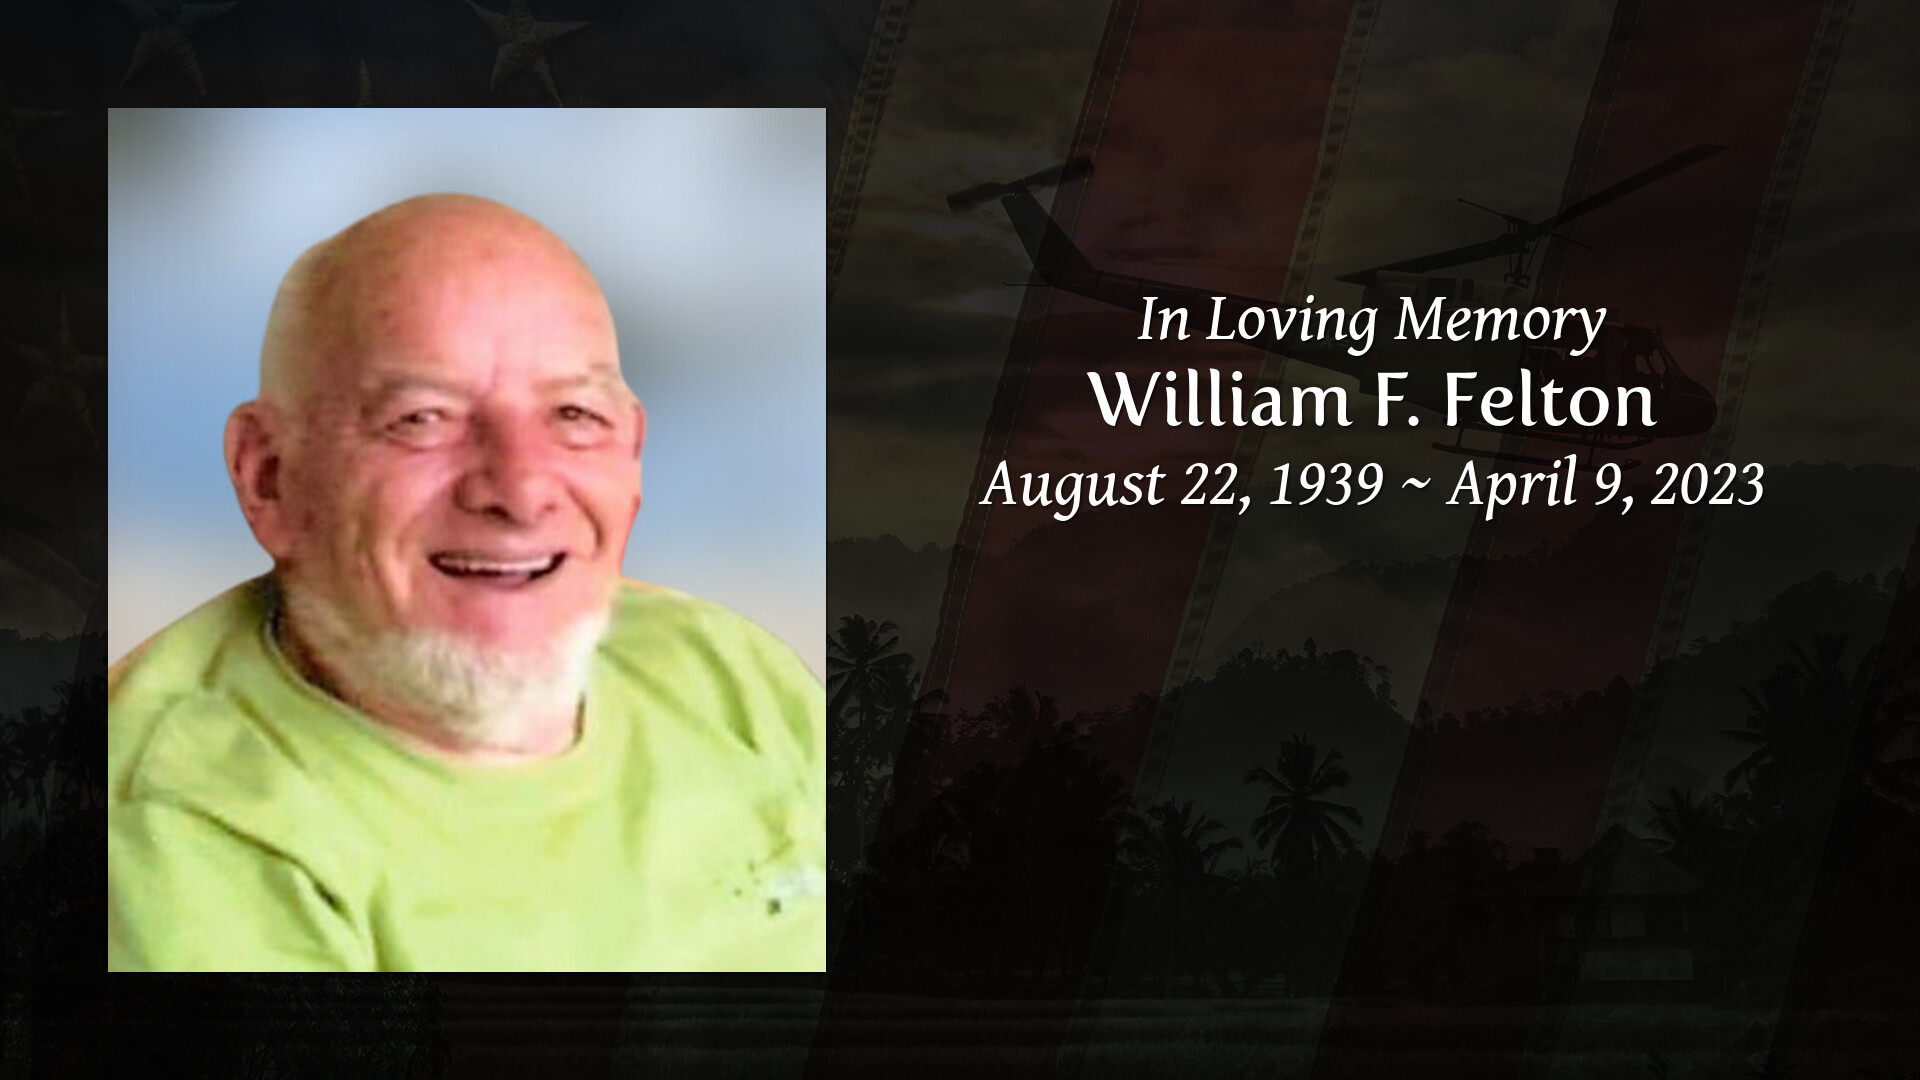 William F. Felton Tribute Video